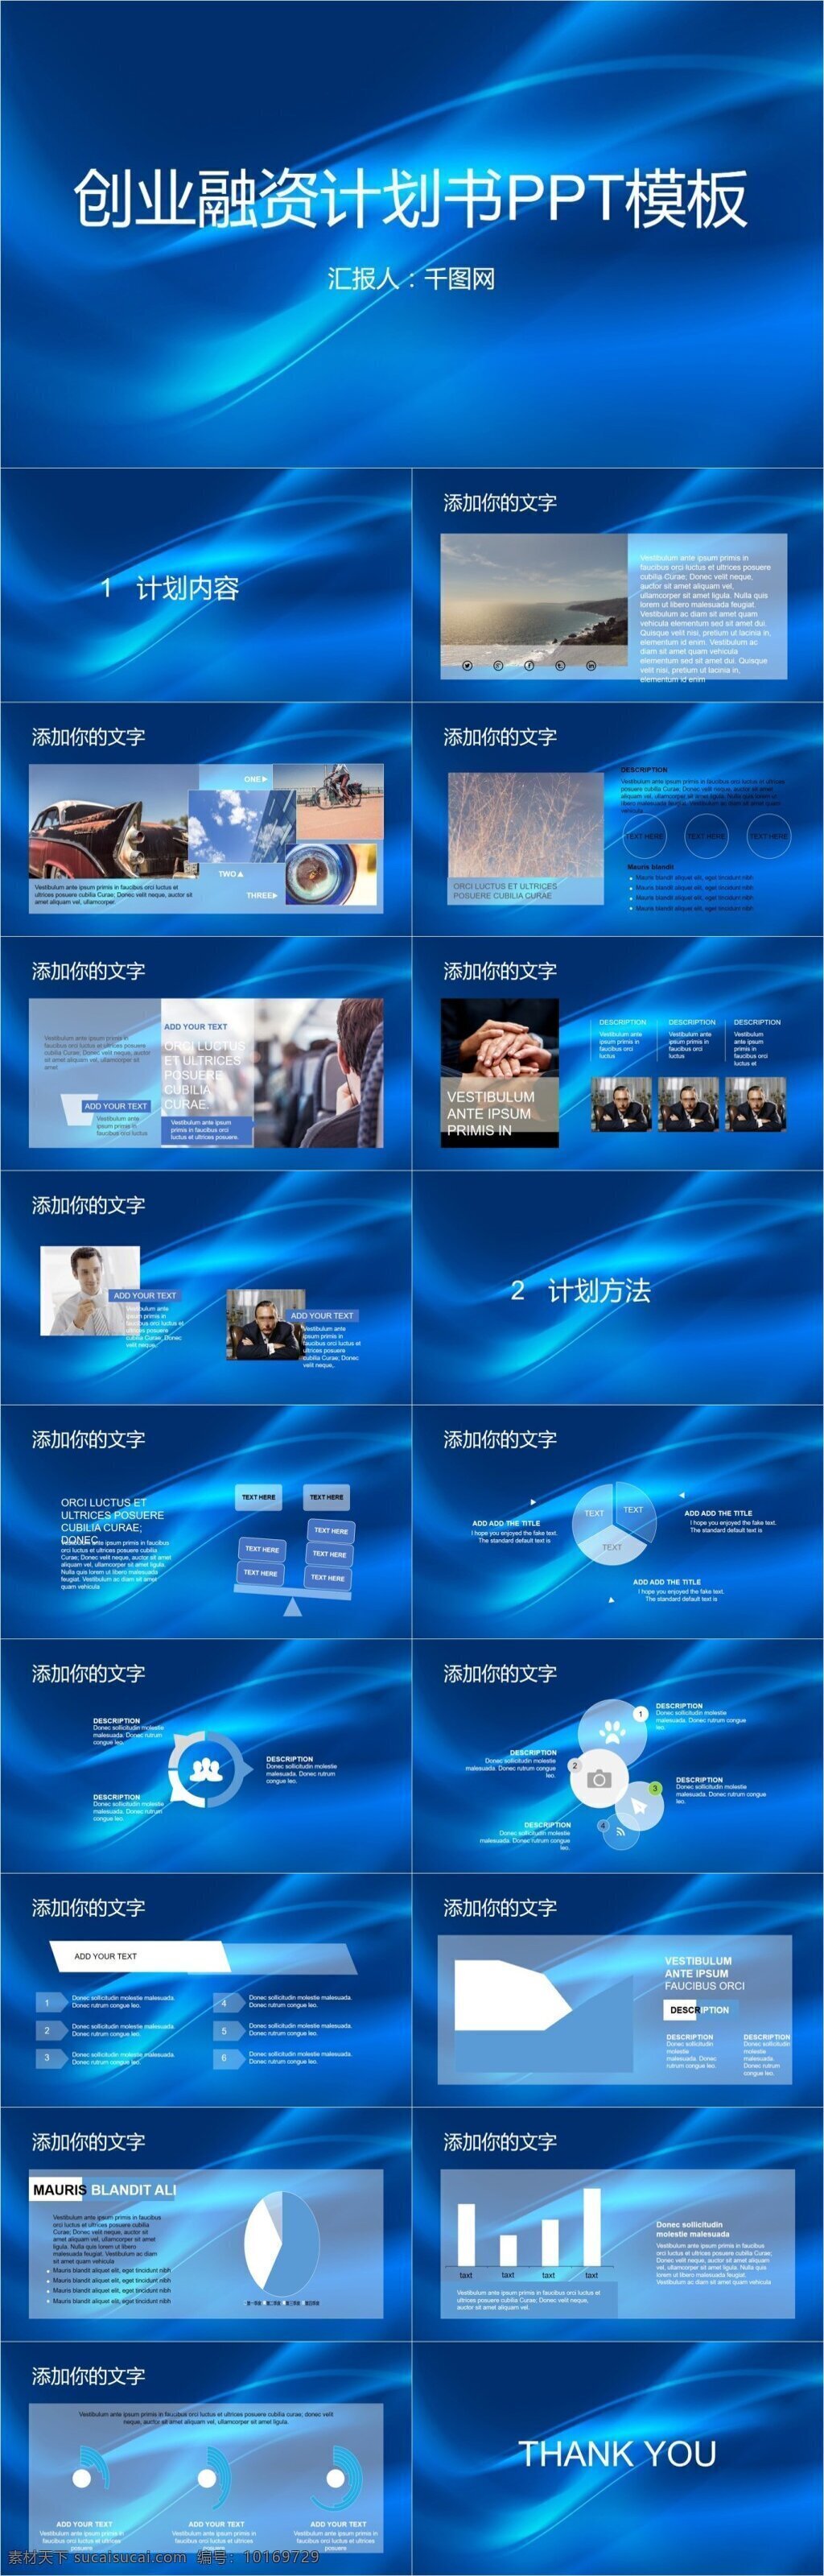 2018 创意 蓝色 商务 年终 工作总结 汇报 通用 模板 总结 报告 公司 企业 精美商务模板 商务图表模板